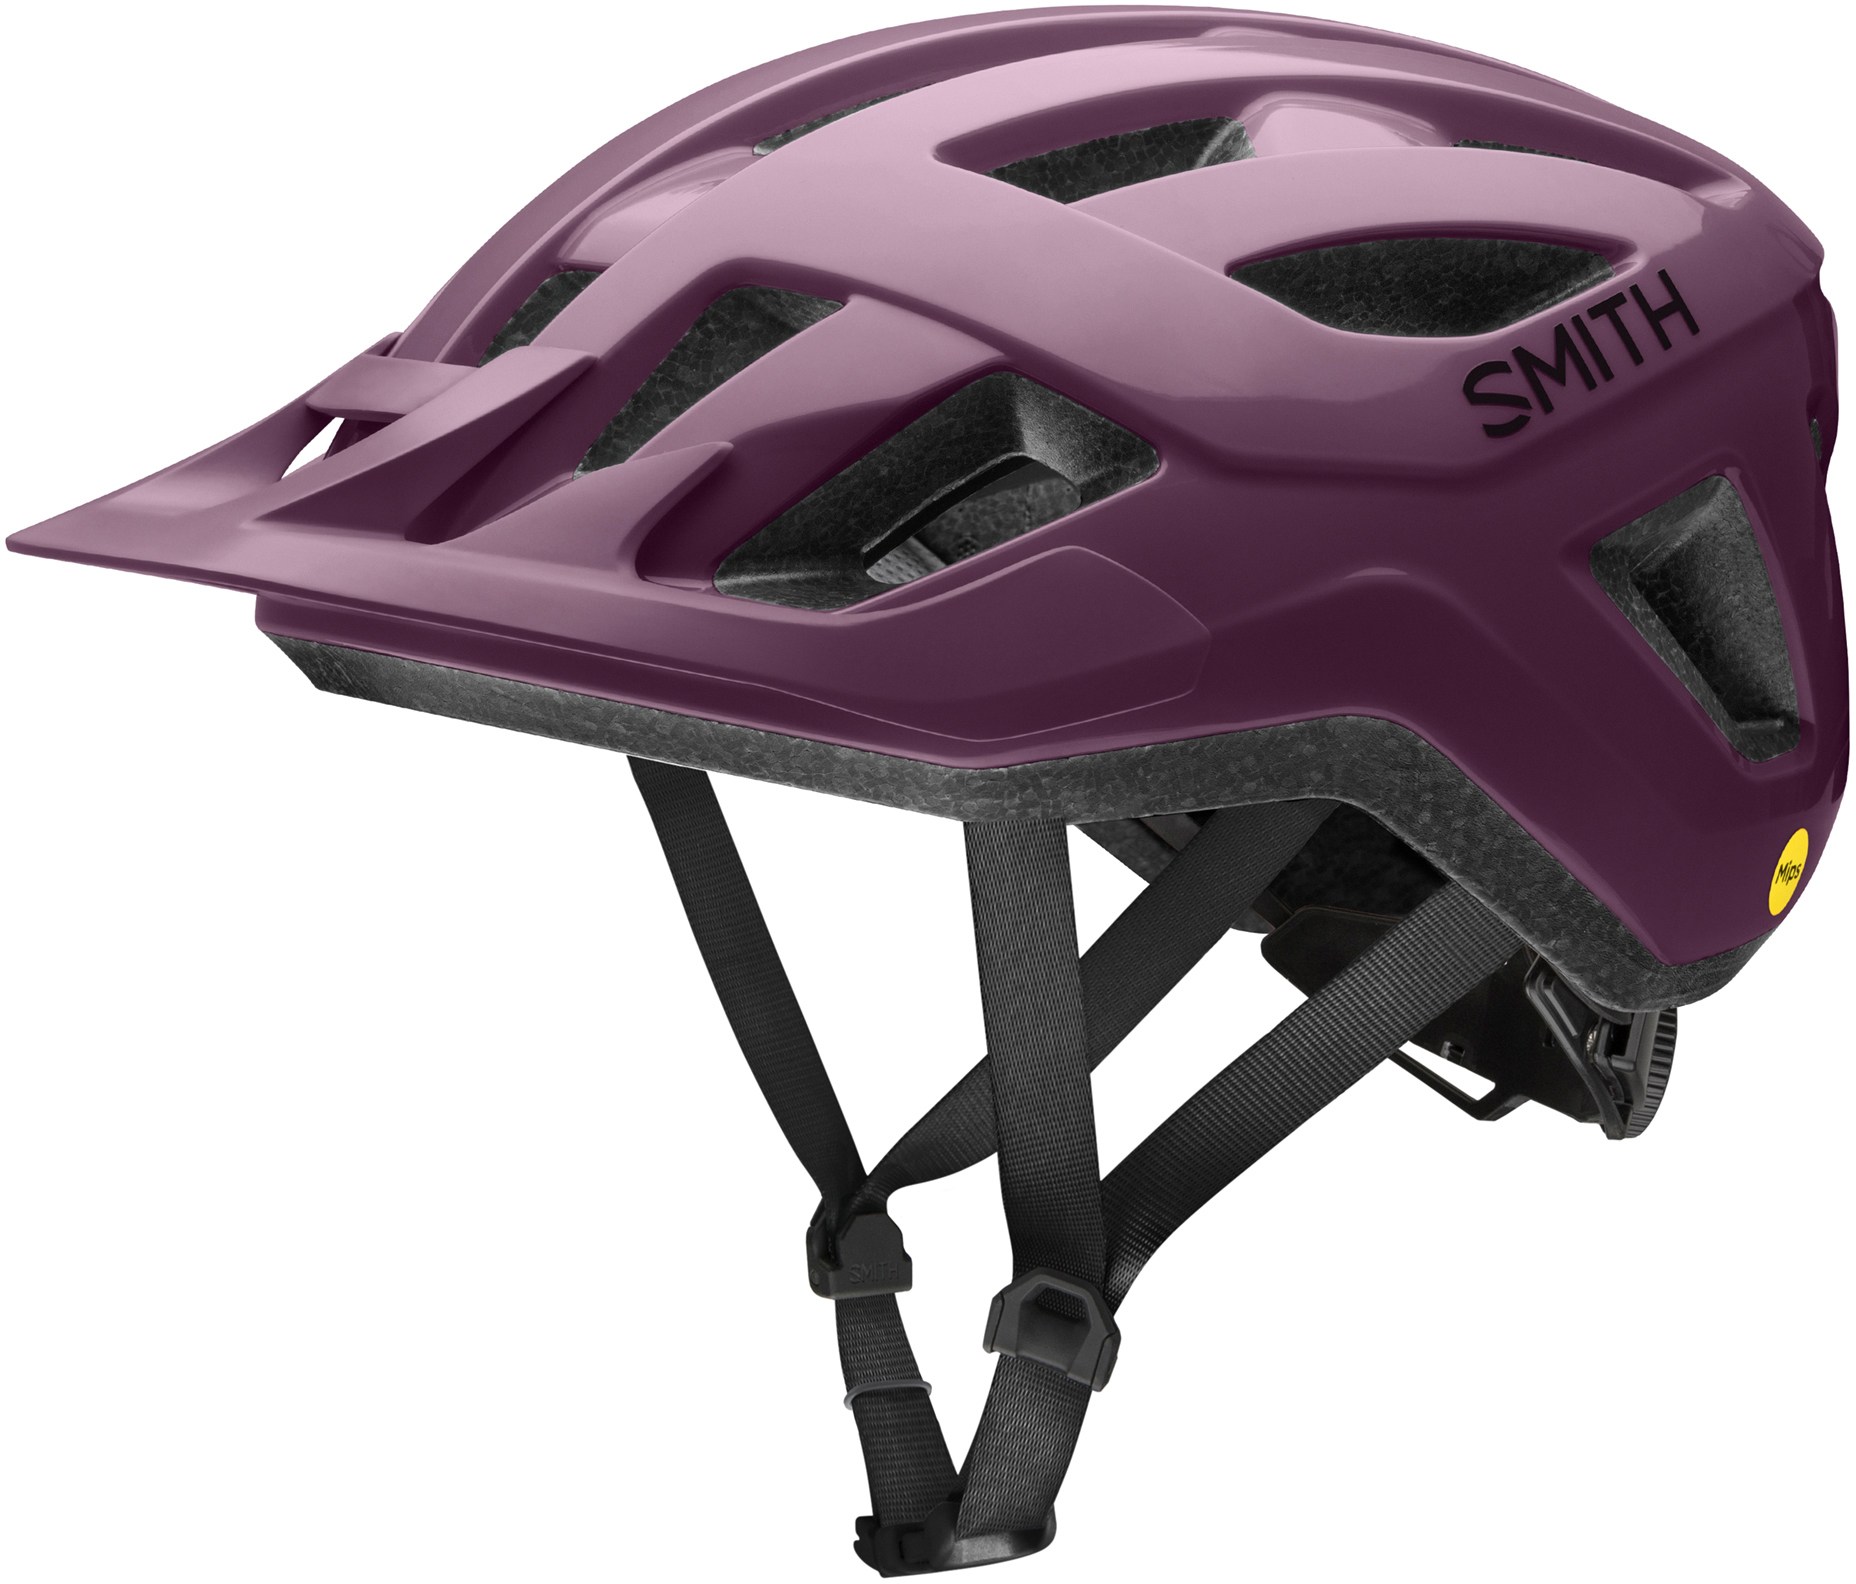 Велосипедный шлем Convoy MIPS Smith, фиолетовый цена и фото